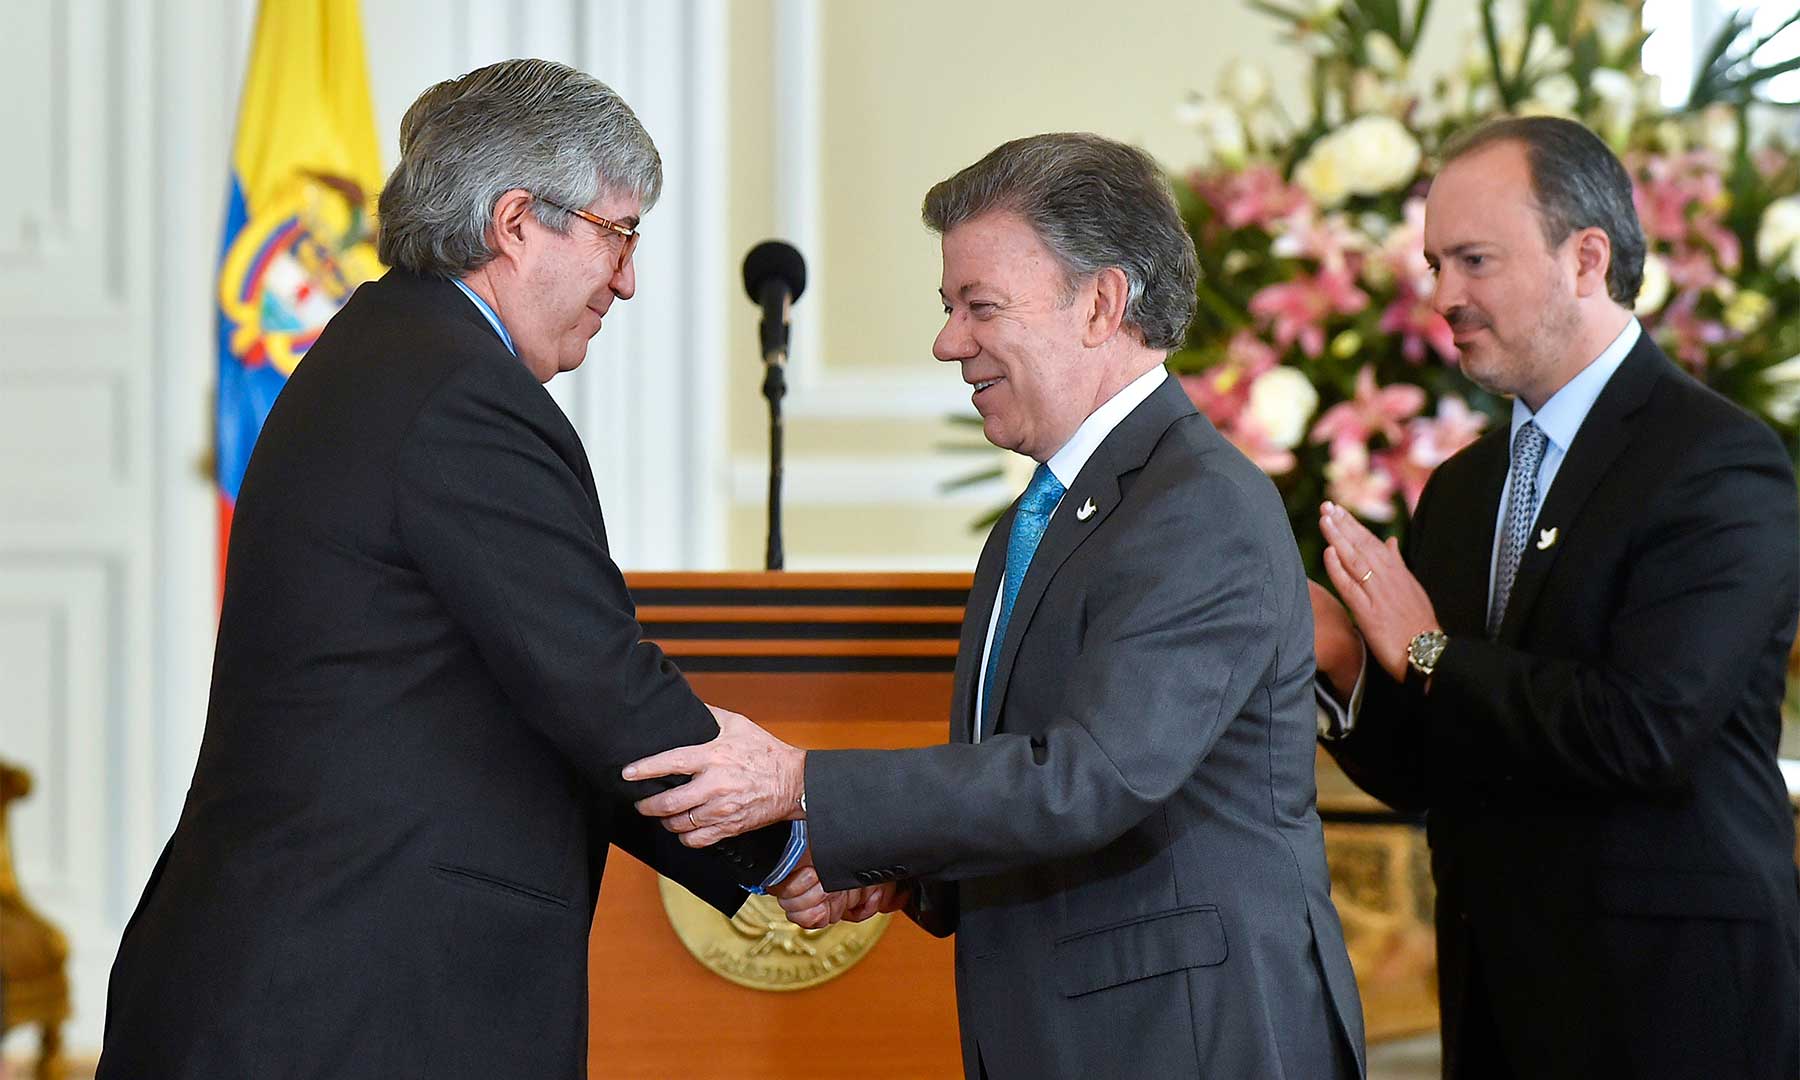 El Presidente Santos felicita en su posesión a Eduardo Díaz como nuevo Director para la Atención Integral de la Lucha contra las Drogas, con la misión de buscar estrategias efectivas en sustitución de cultivos ilícitos.